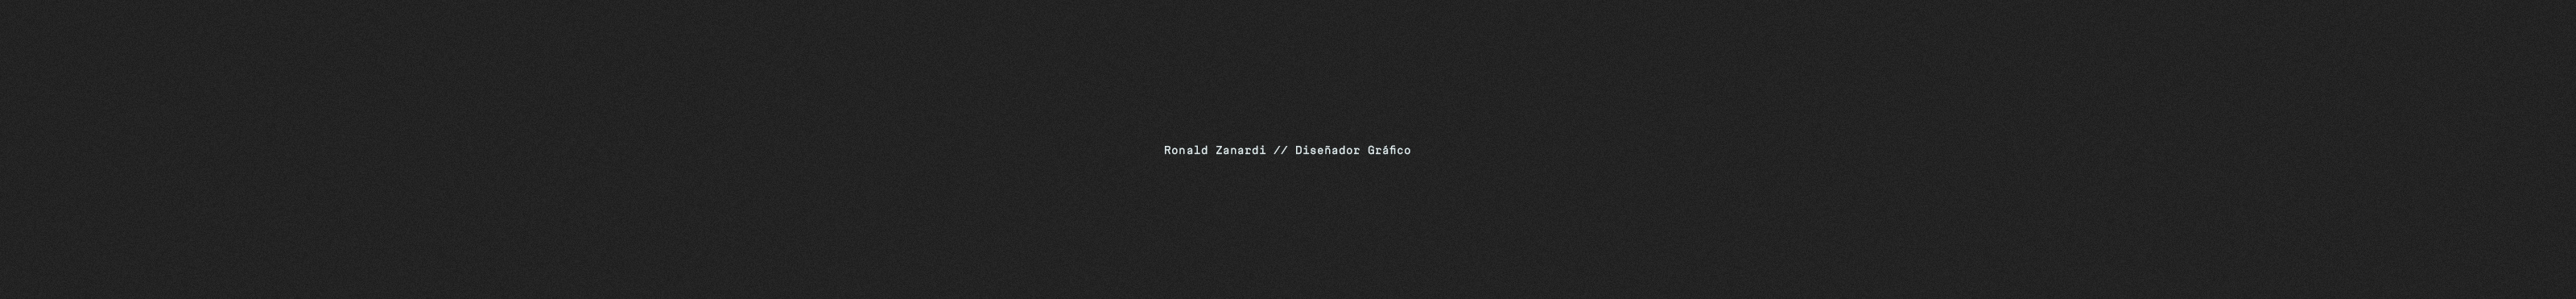 Ronald Zanardi's profile banner